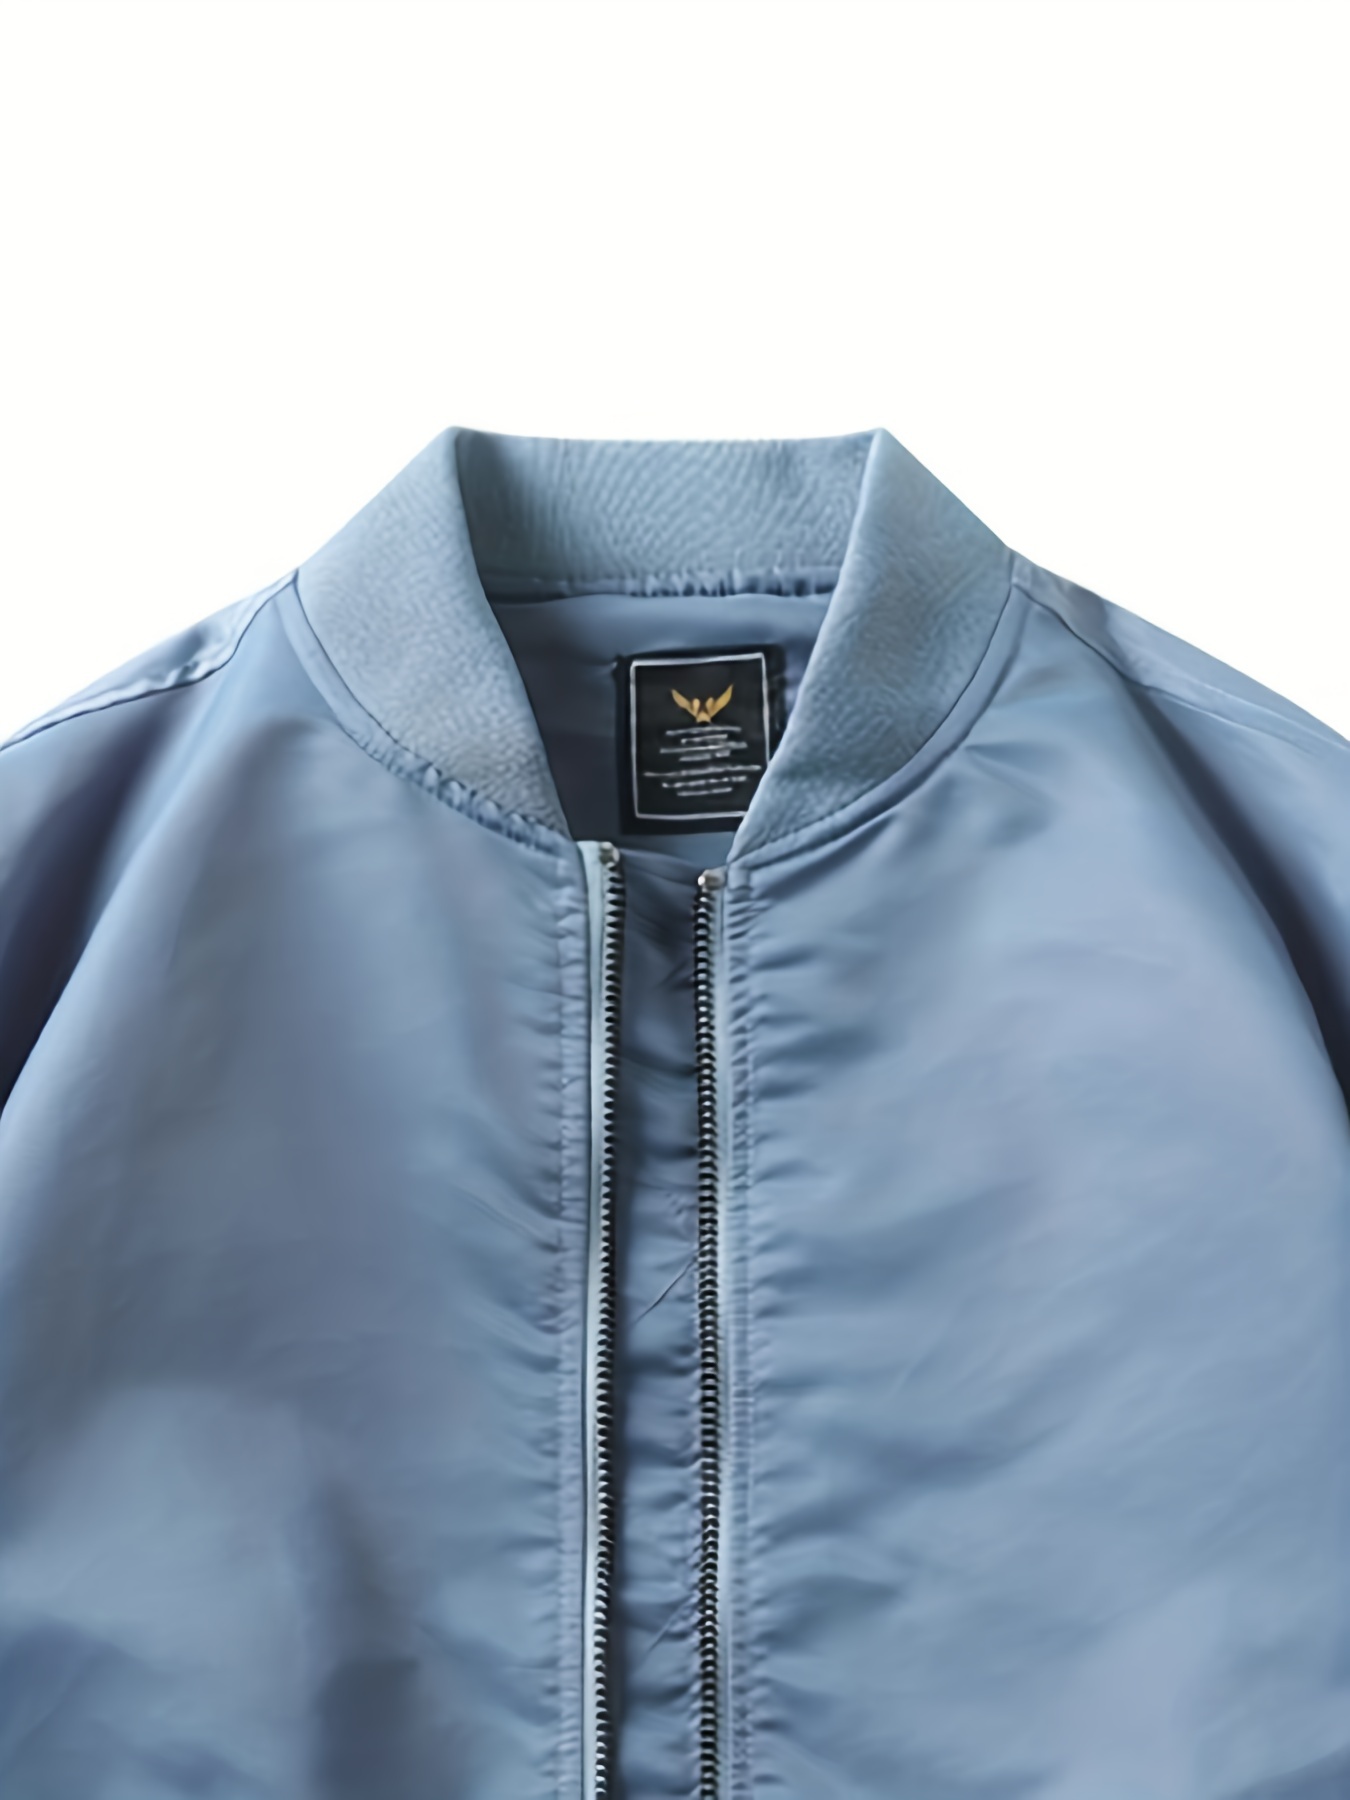 Hazed Zip - Lightweight Iridescent Jacket for Men